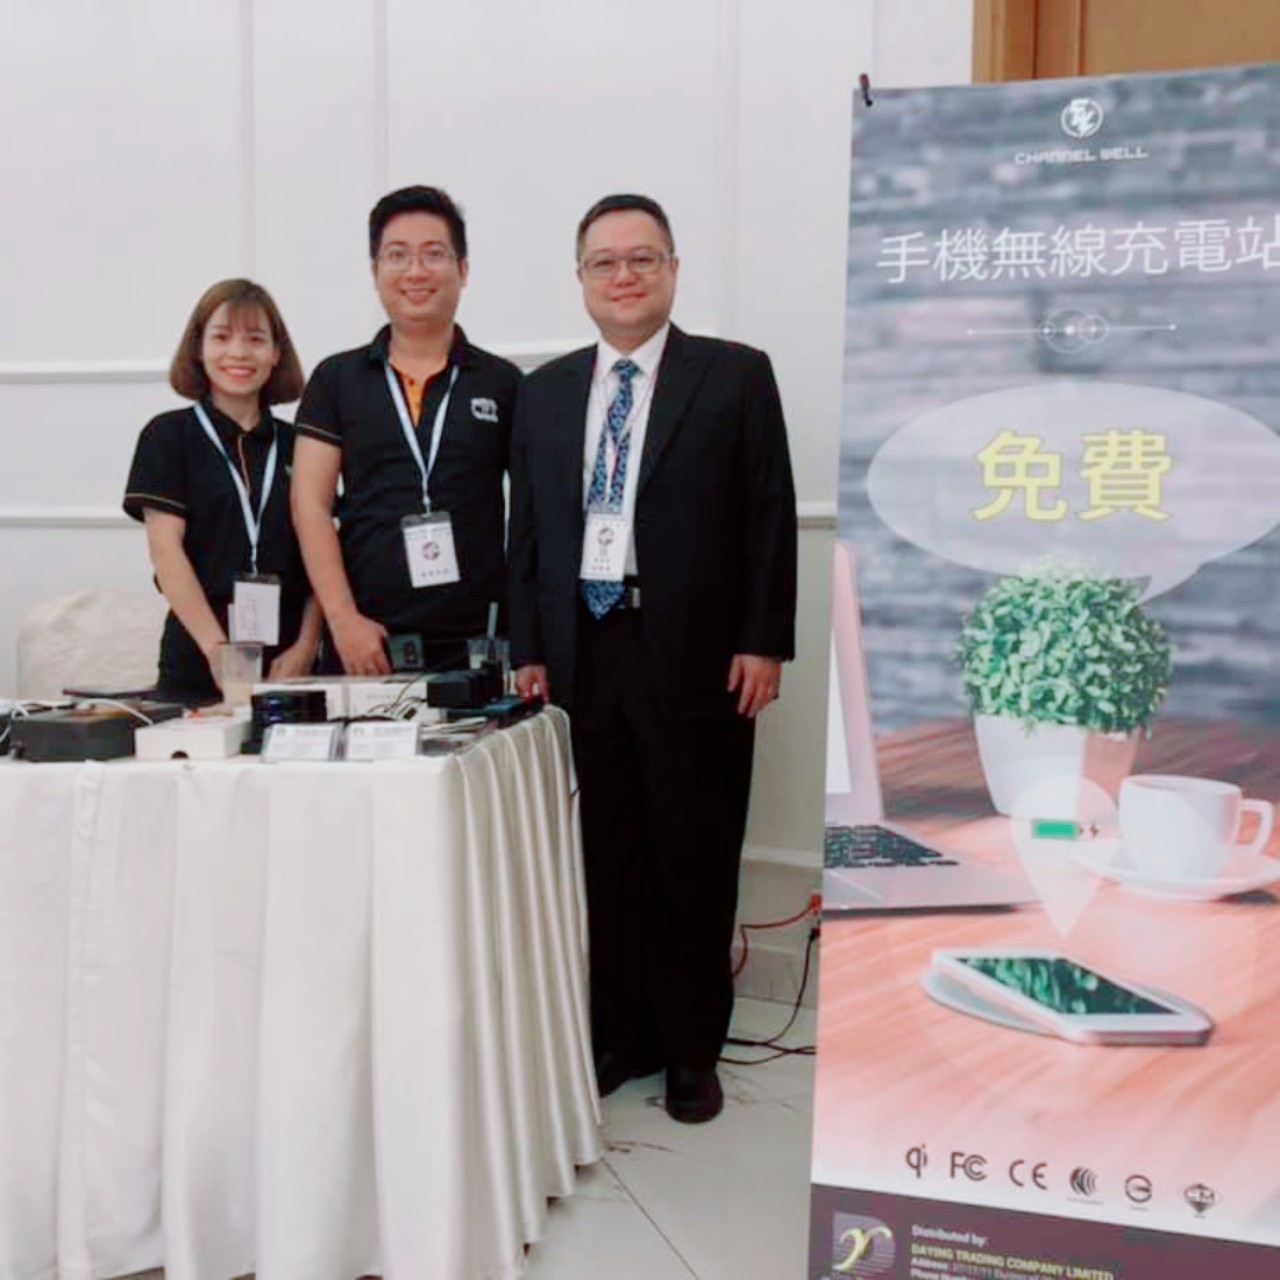 Triển lãm sạc không dây Channel Wel tại Hội nghị do Hiệp hội thương mại Đài Loan tại Khách sạn New world ngày 22/09/2019.